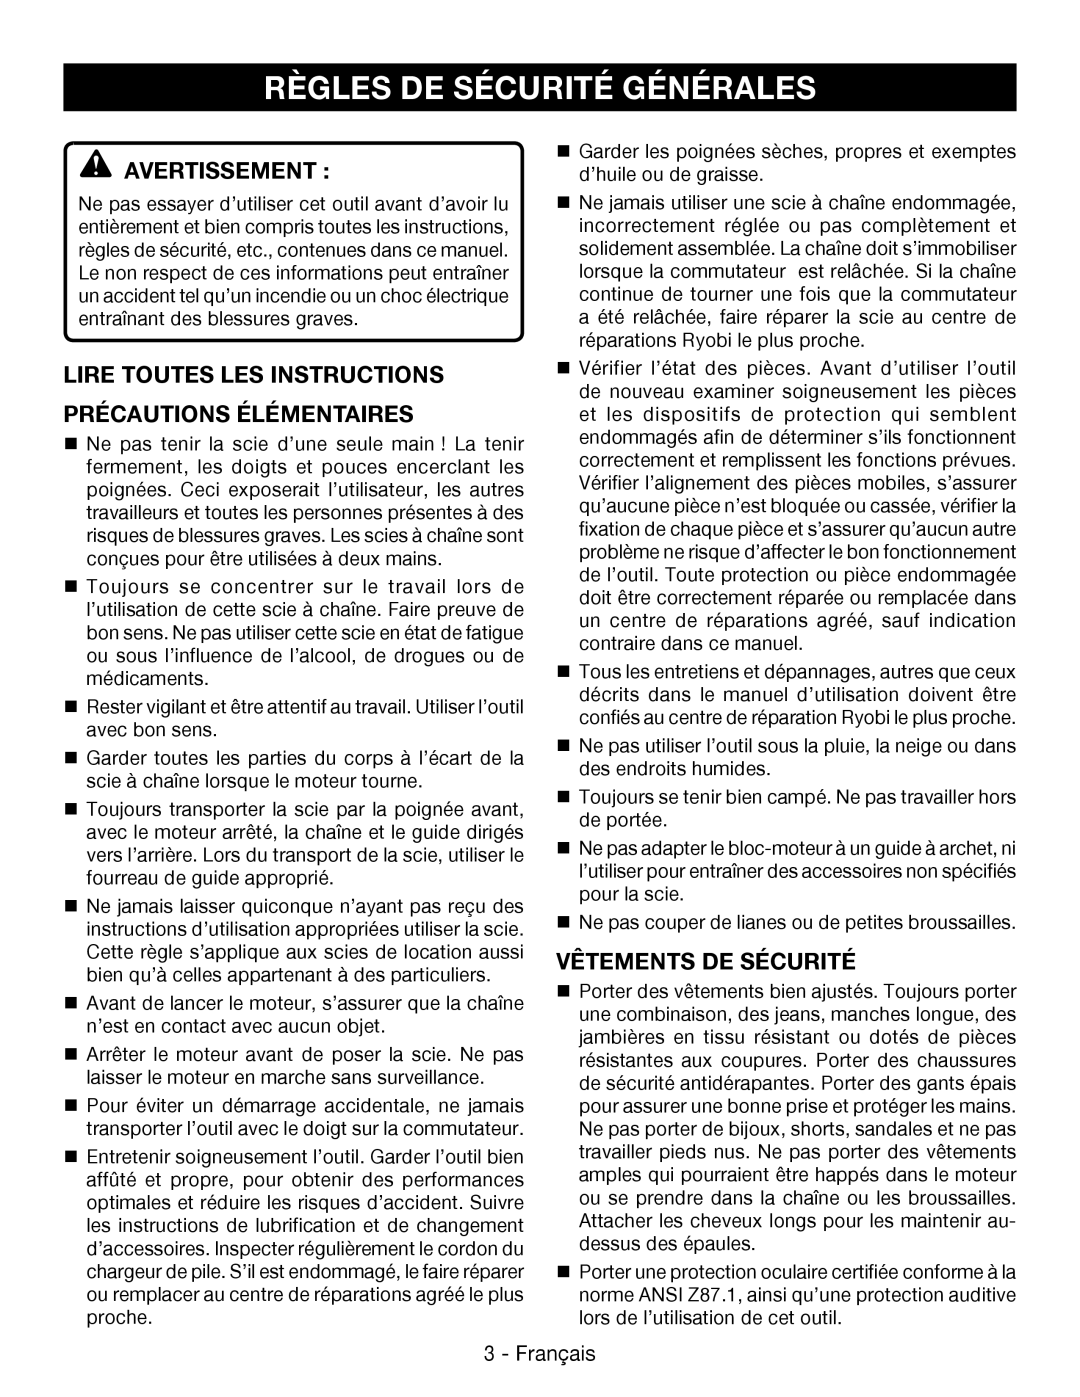 Ryobi P545 manuel dutilisation Règles De Sécurité Générales, Avertissement , Vêtements De Sécurité 